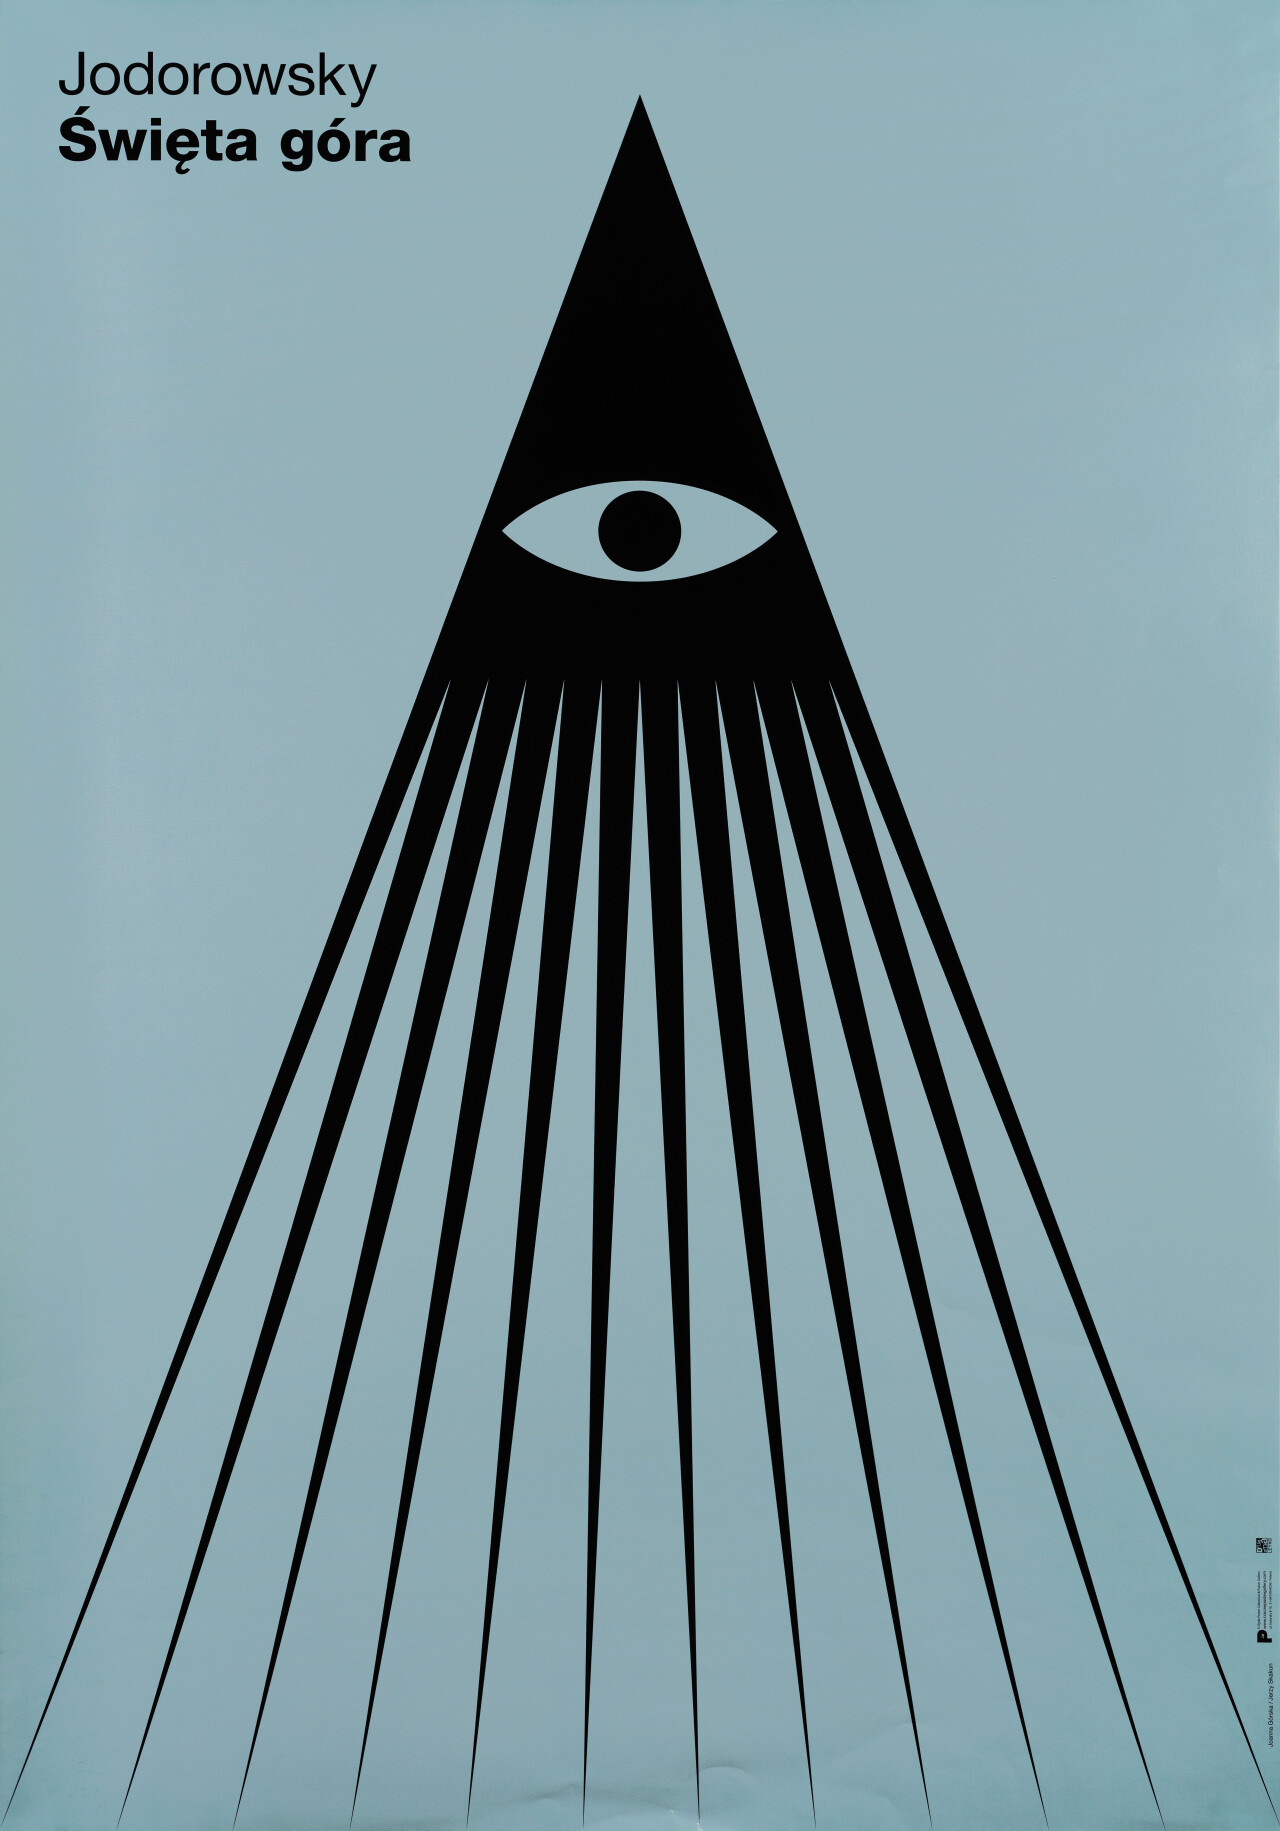 Святая Гора (The Holy Mountain, 1973), режиссёр Алехандро Ходоровски, минималистичный постер к фильму (Польша, 2008 год), автор Джоанна Горска, Ежи Скакун